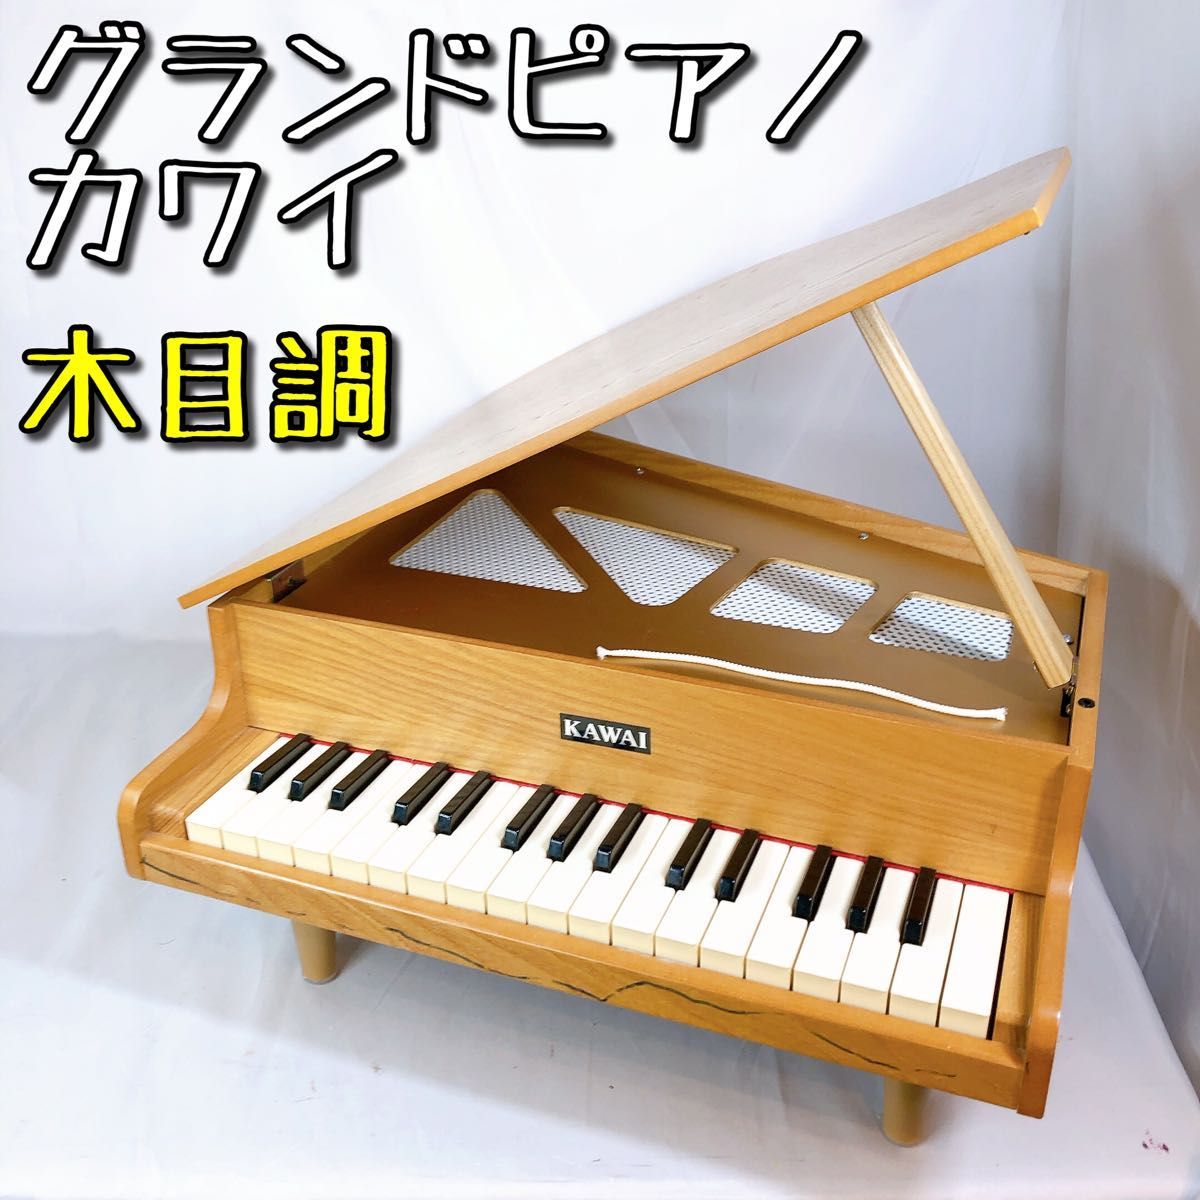 グランドピアノ ミニピアノ カワイ 1122 木目 子供用ピアノ KAWAI 河合 鍵盤 子供 キッズ 練習 音楽